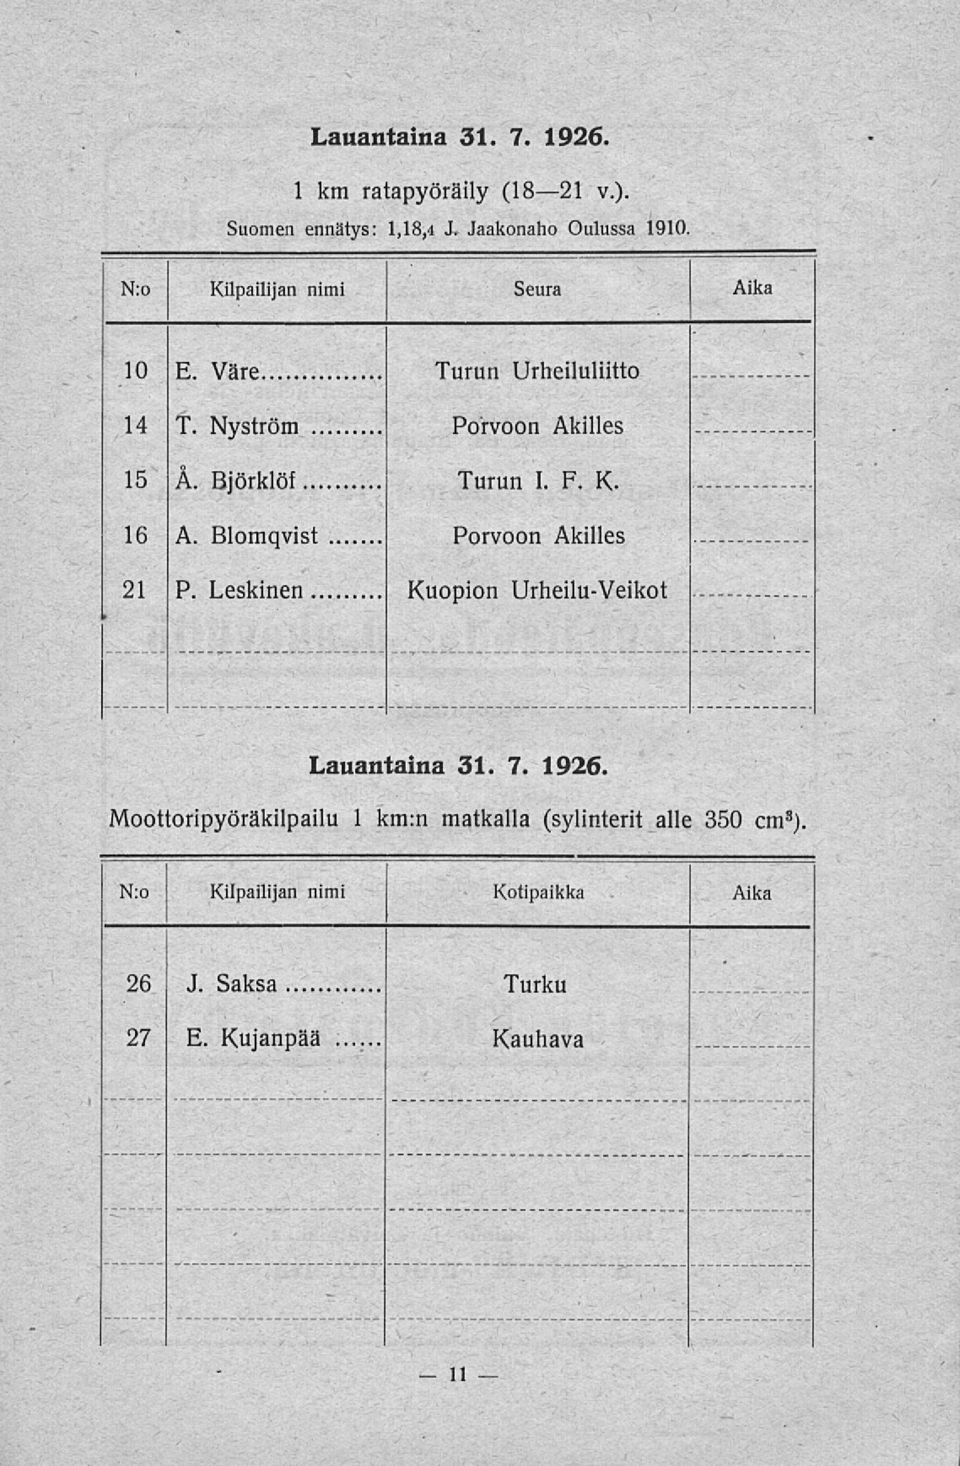 F. K. Porvoon Akilles 21 P. Leskinen Kuopion Urheilu-Veikot Lauantaina 31. 7. 1926.